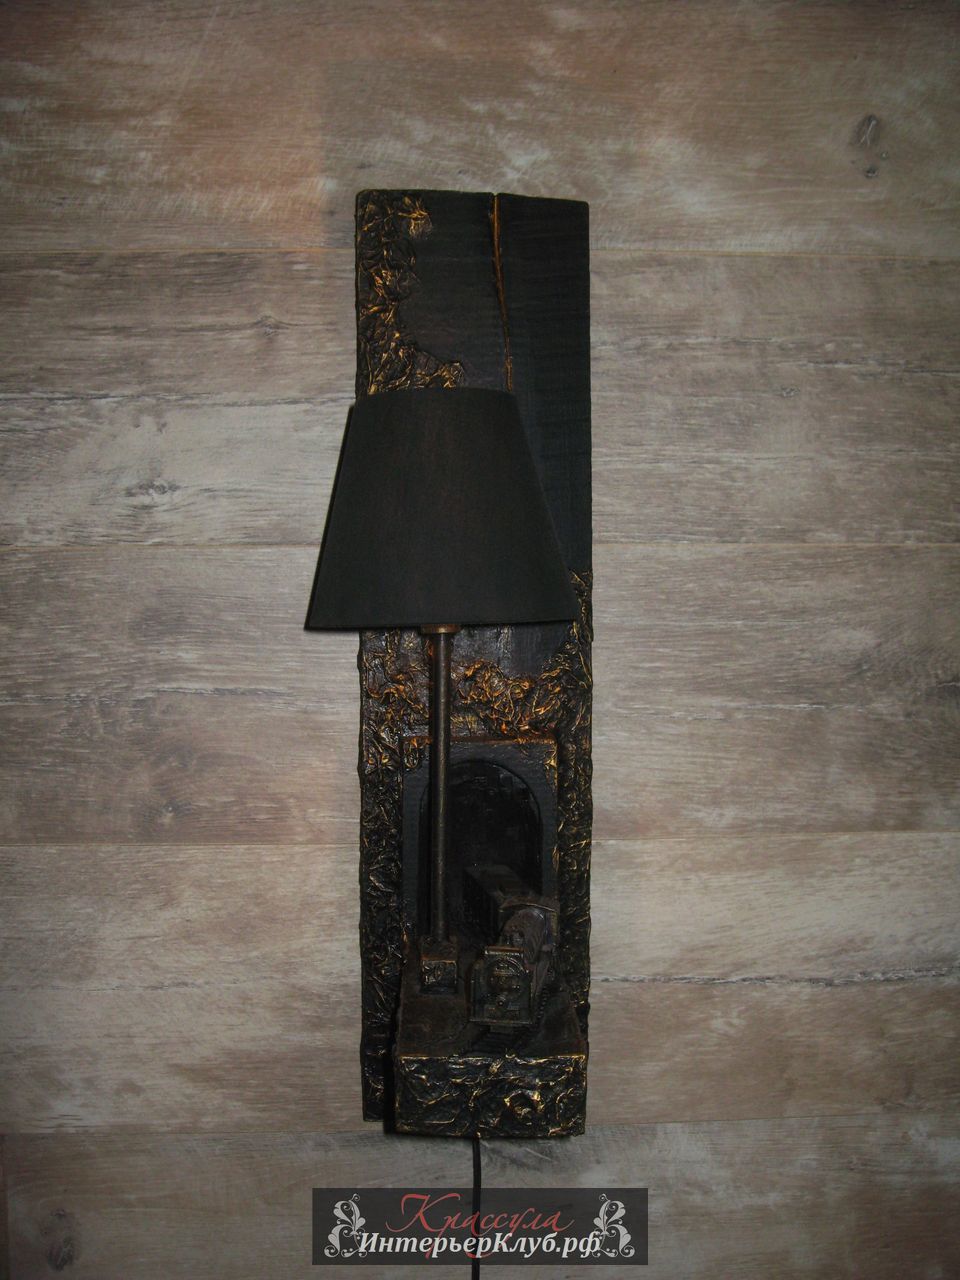 122 Светильник Путь - амбарная доска, с элементами декора (паровоз ),  цвет черный с позолотой.  Эксклюзивные светильники ручной работы, авторские светильники ручной работы